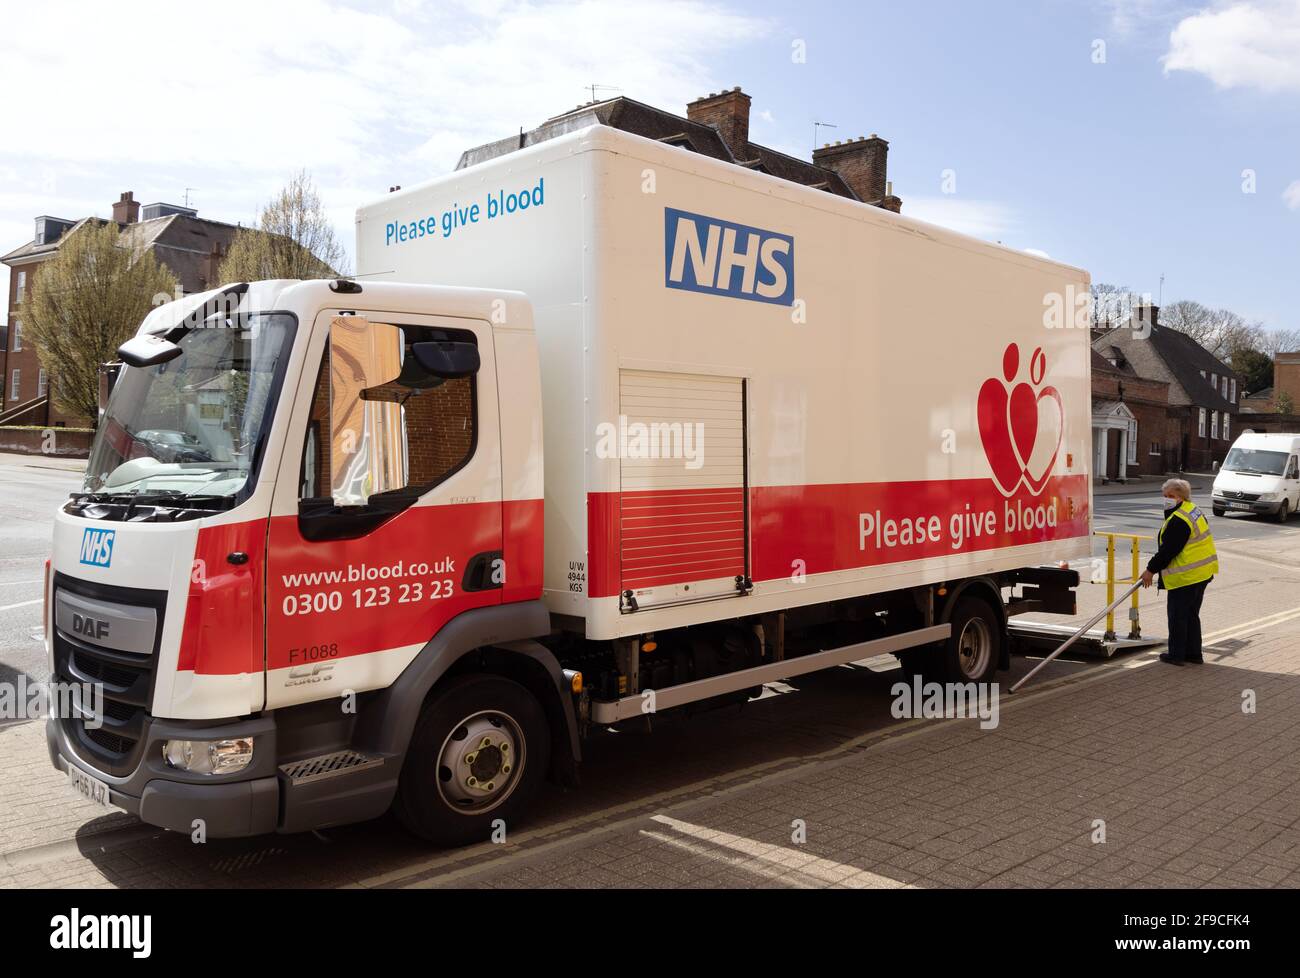 NHS Servicio de transfusión de sangre Reino Unido: Un servicio de transfusión de sangre NHS que establece una sesión de donación de sangre del Servicio Nacional de Salud, Newmarket Suffolk Reino Unido Foto de stock